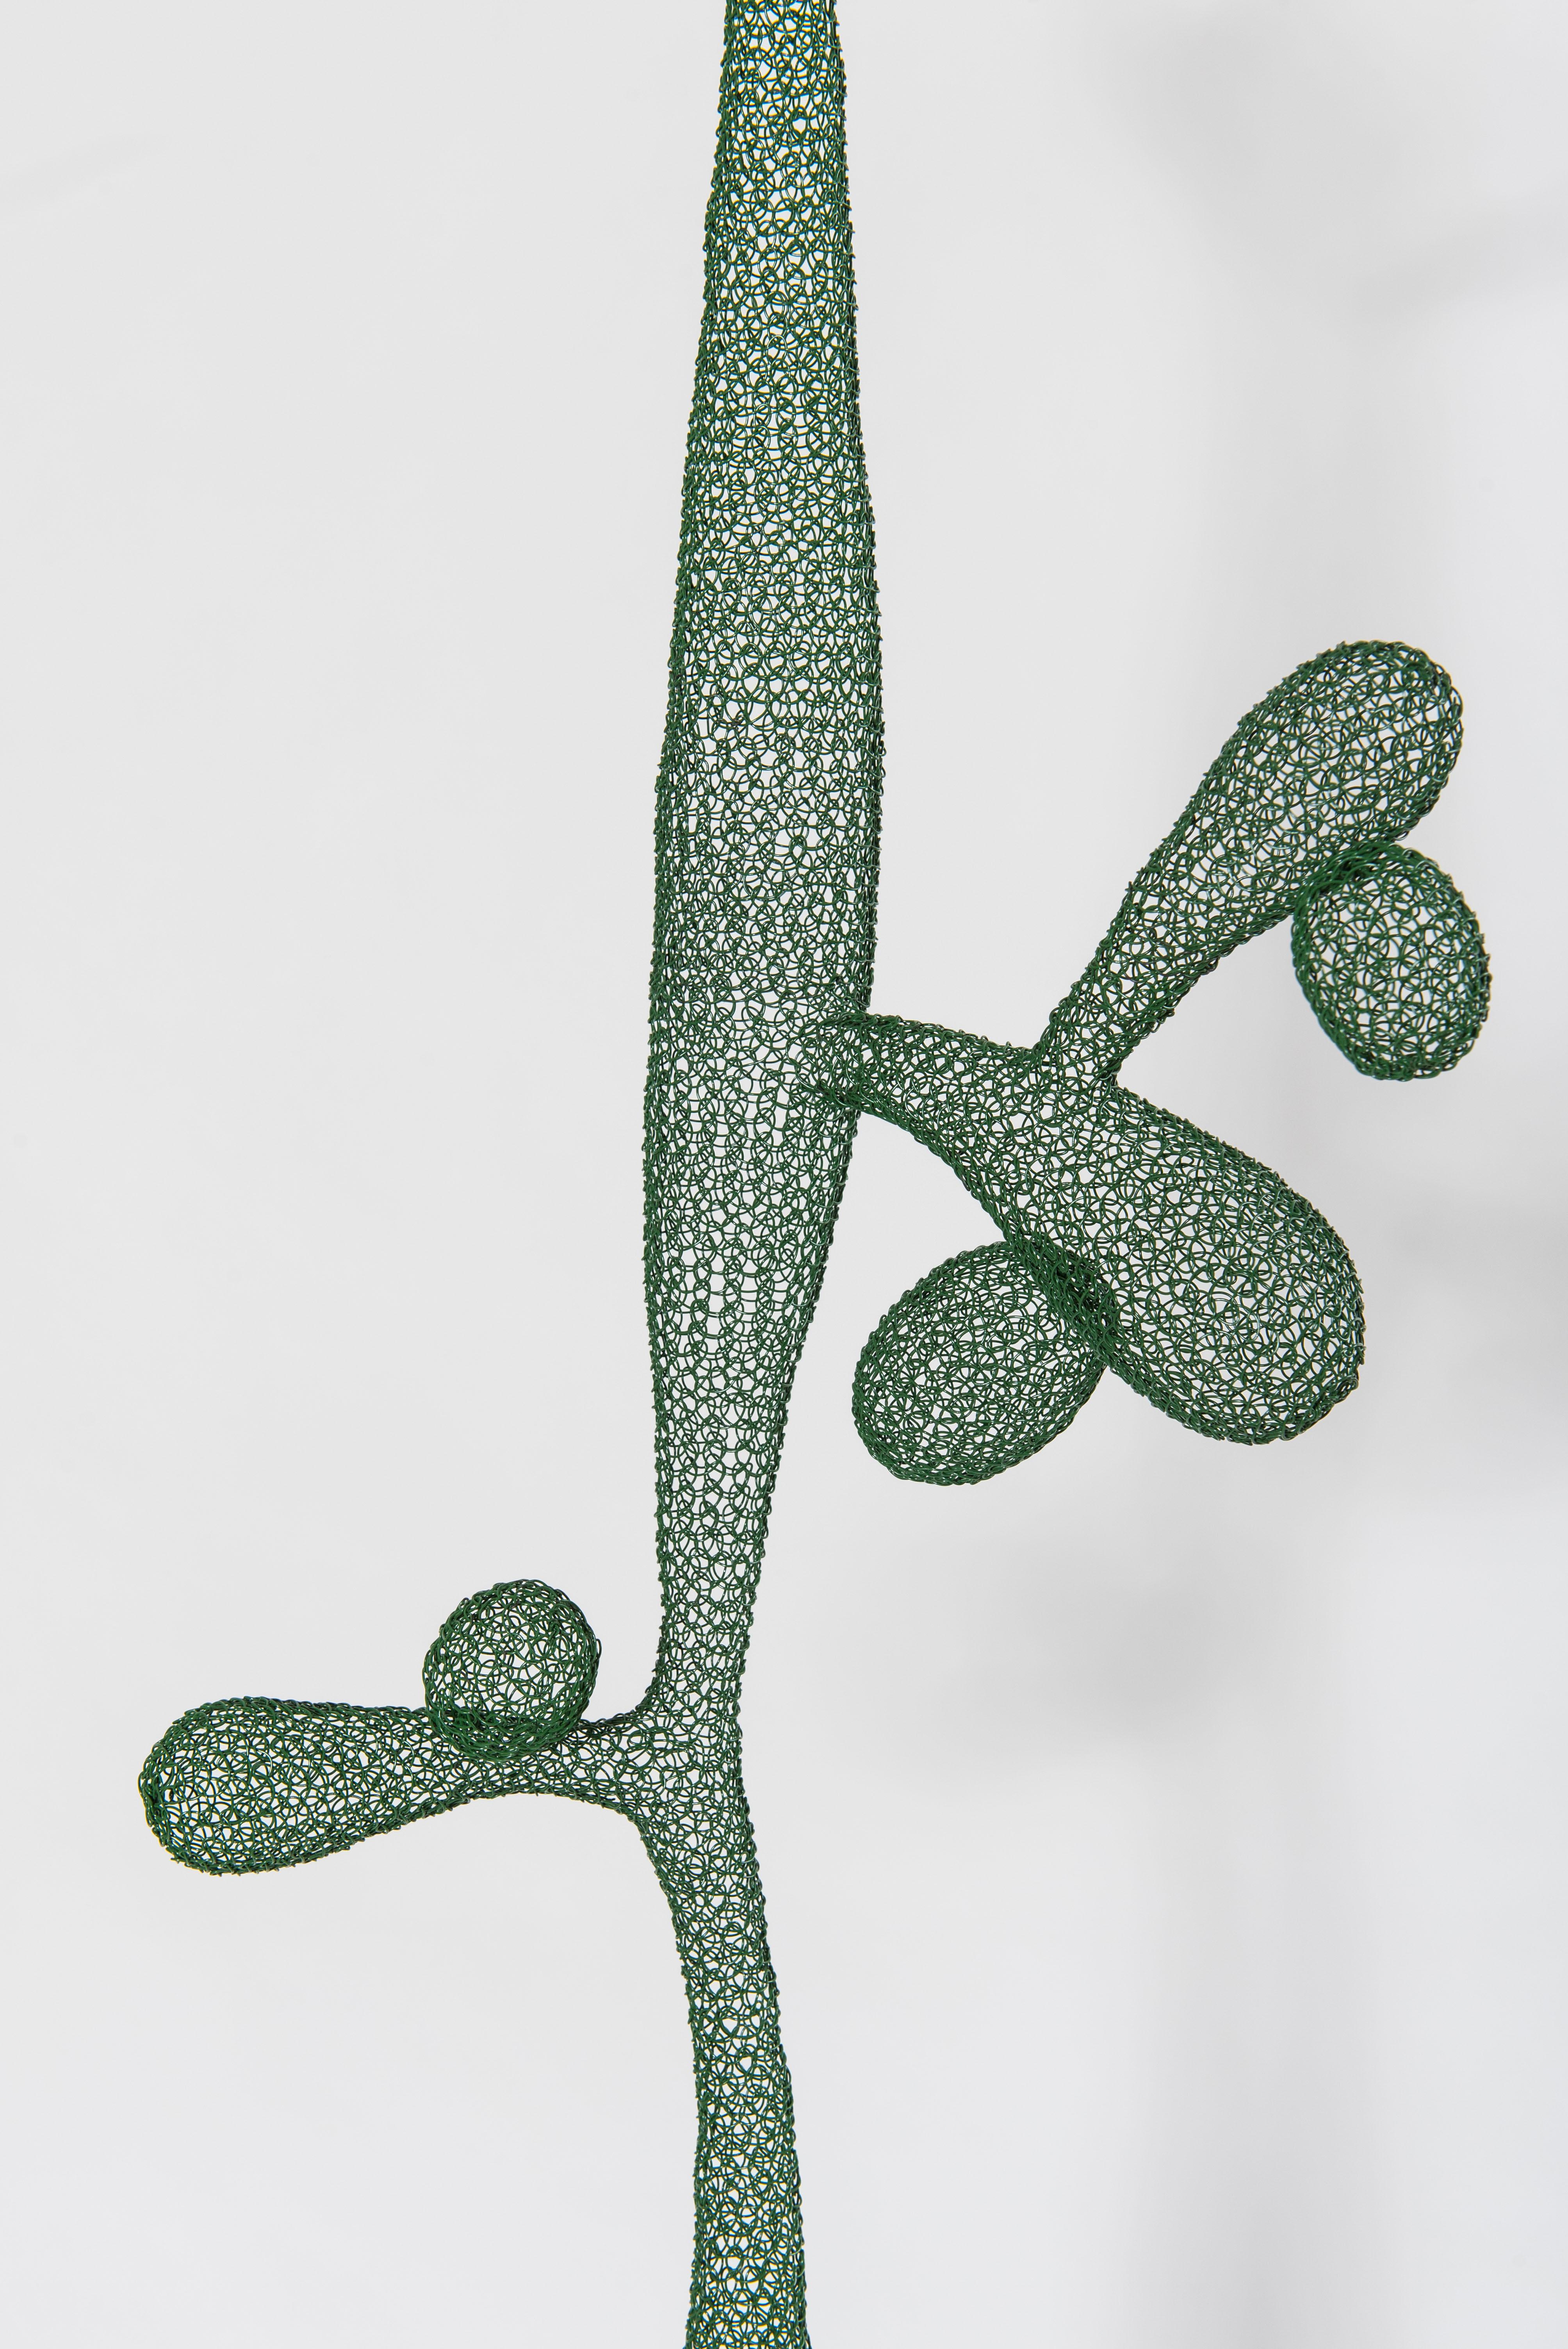 cactus wire sculpture